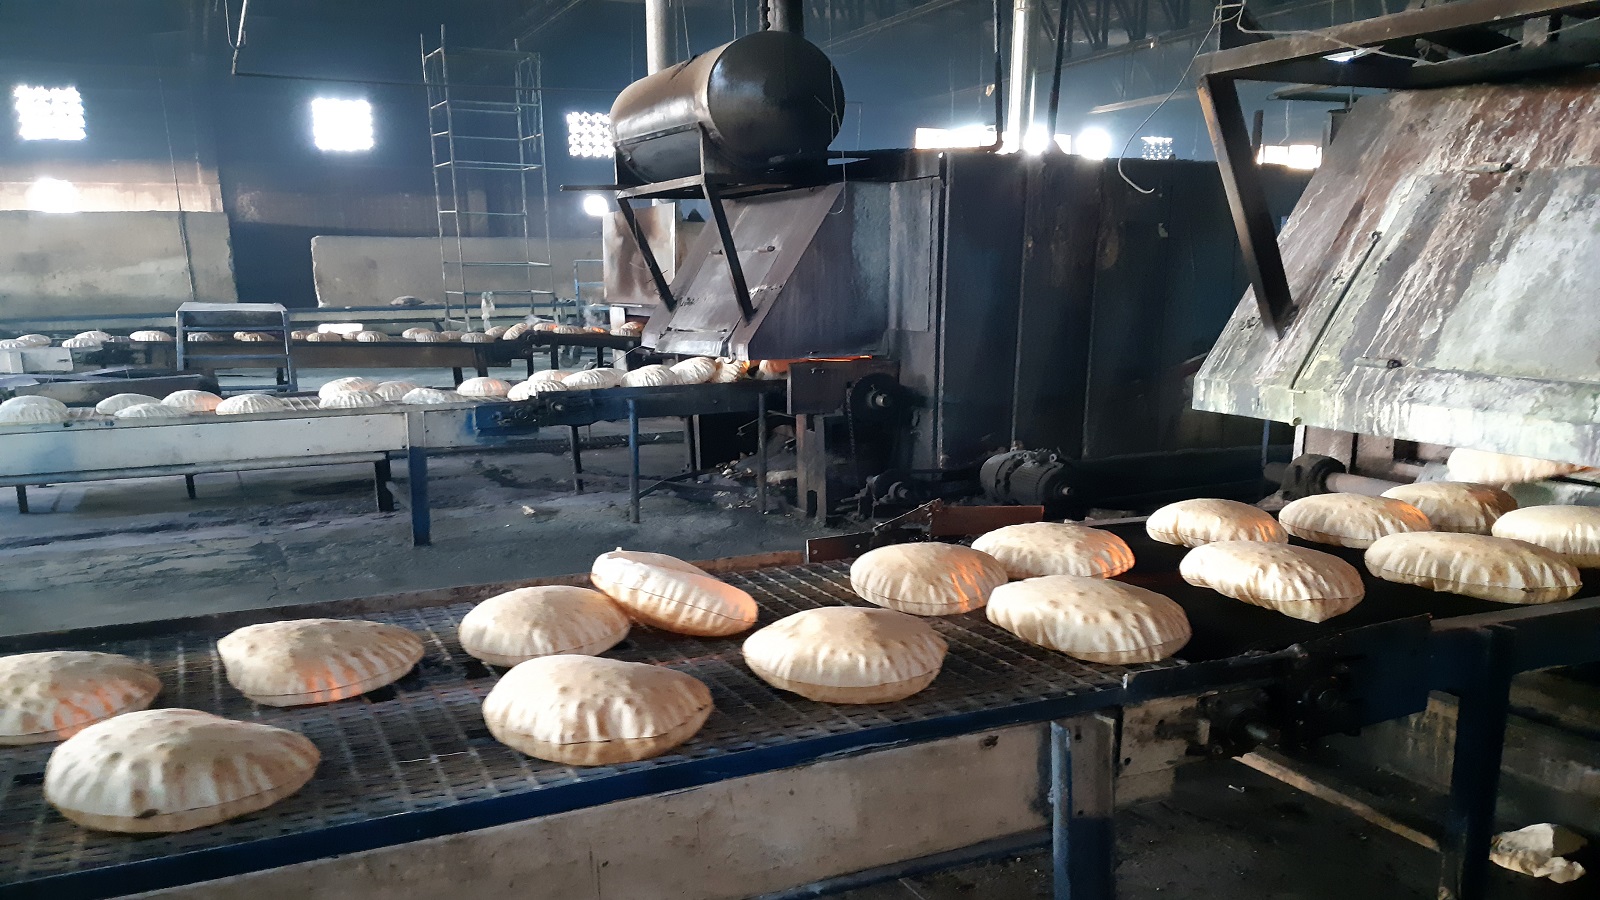 أزمة الخبز في سوريا مفتعلة..لتبرير مضاعفة سعره